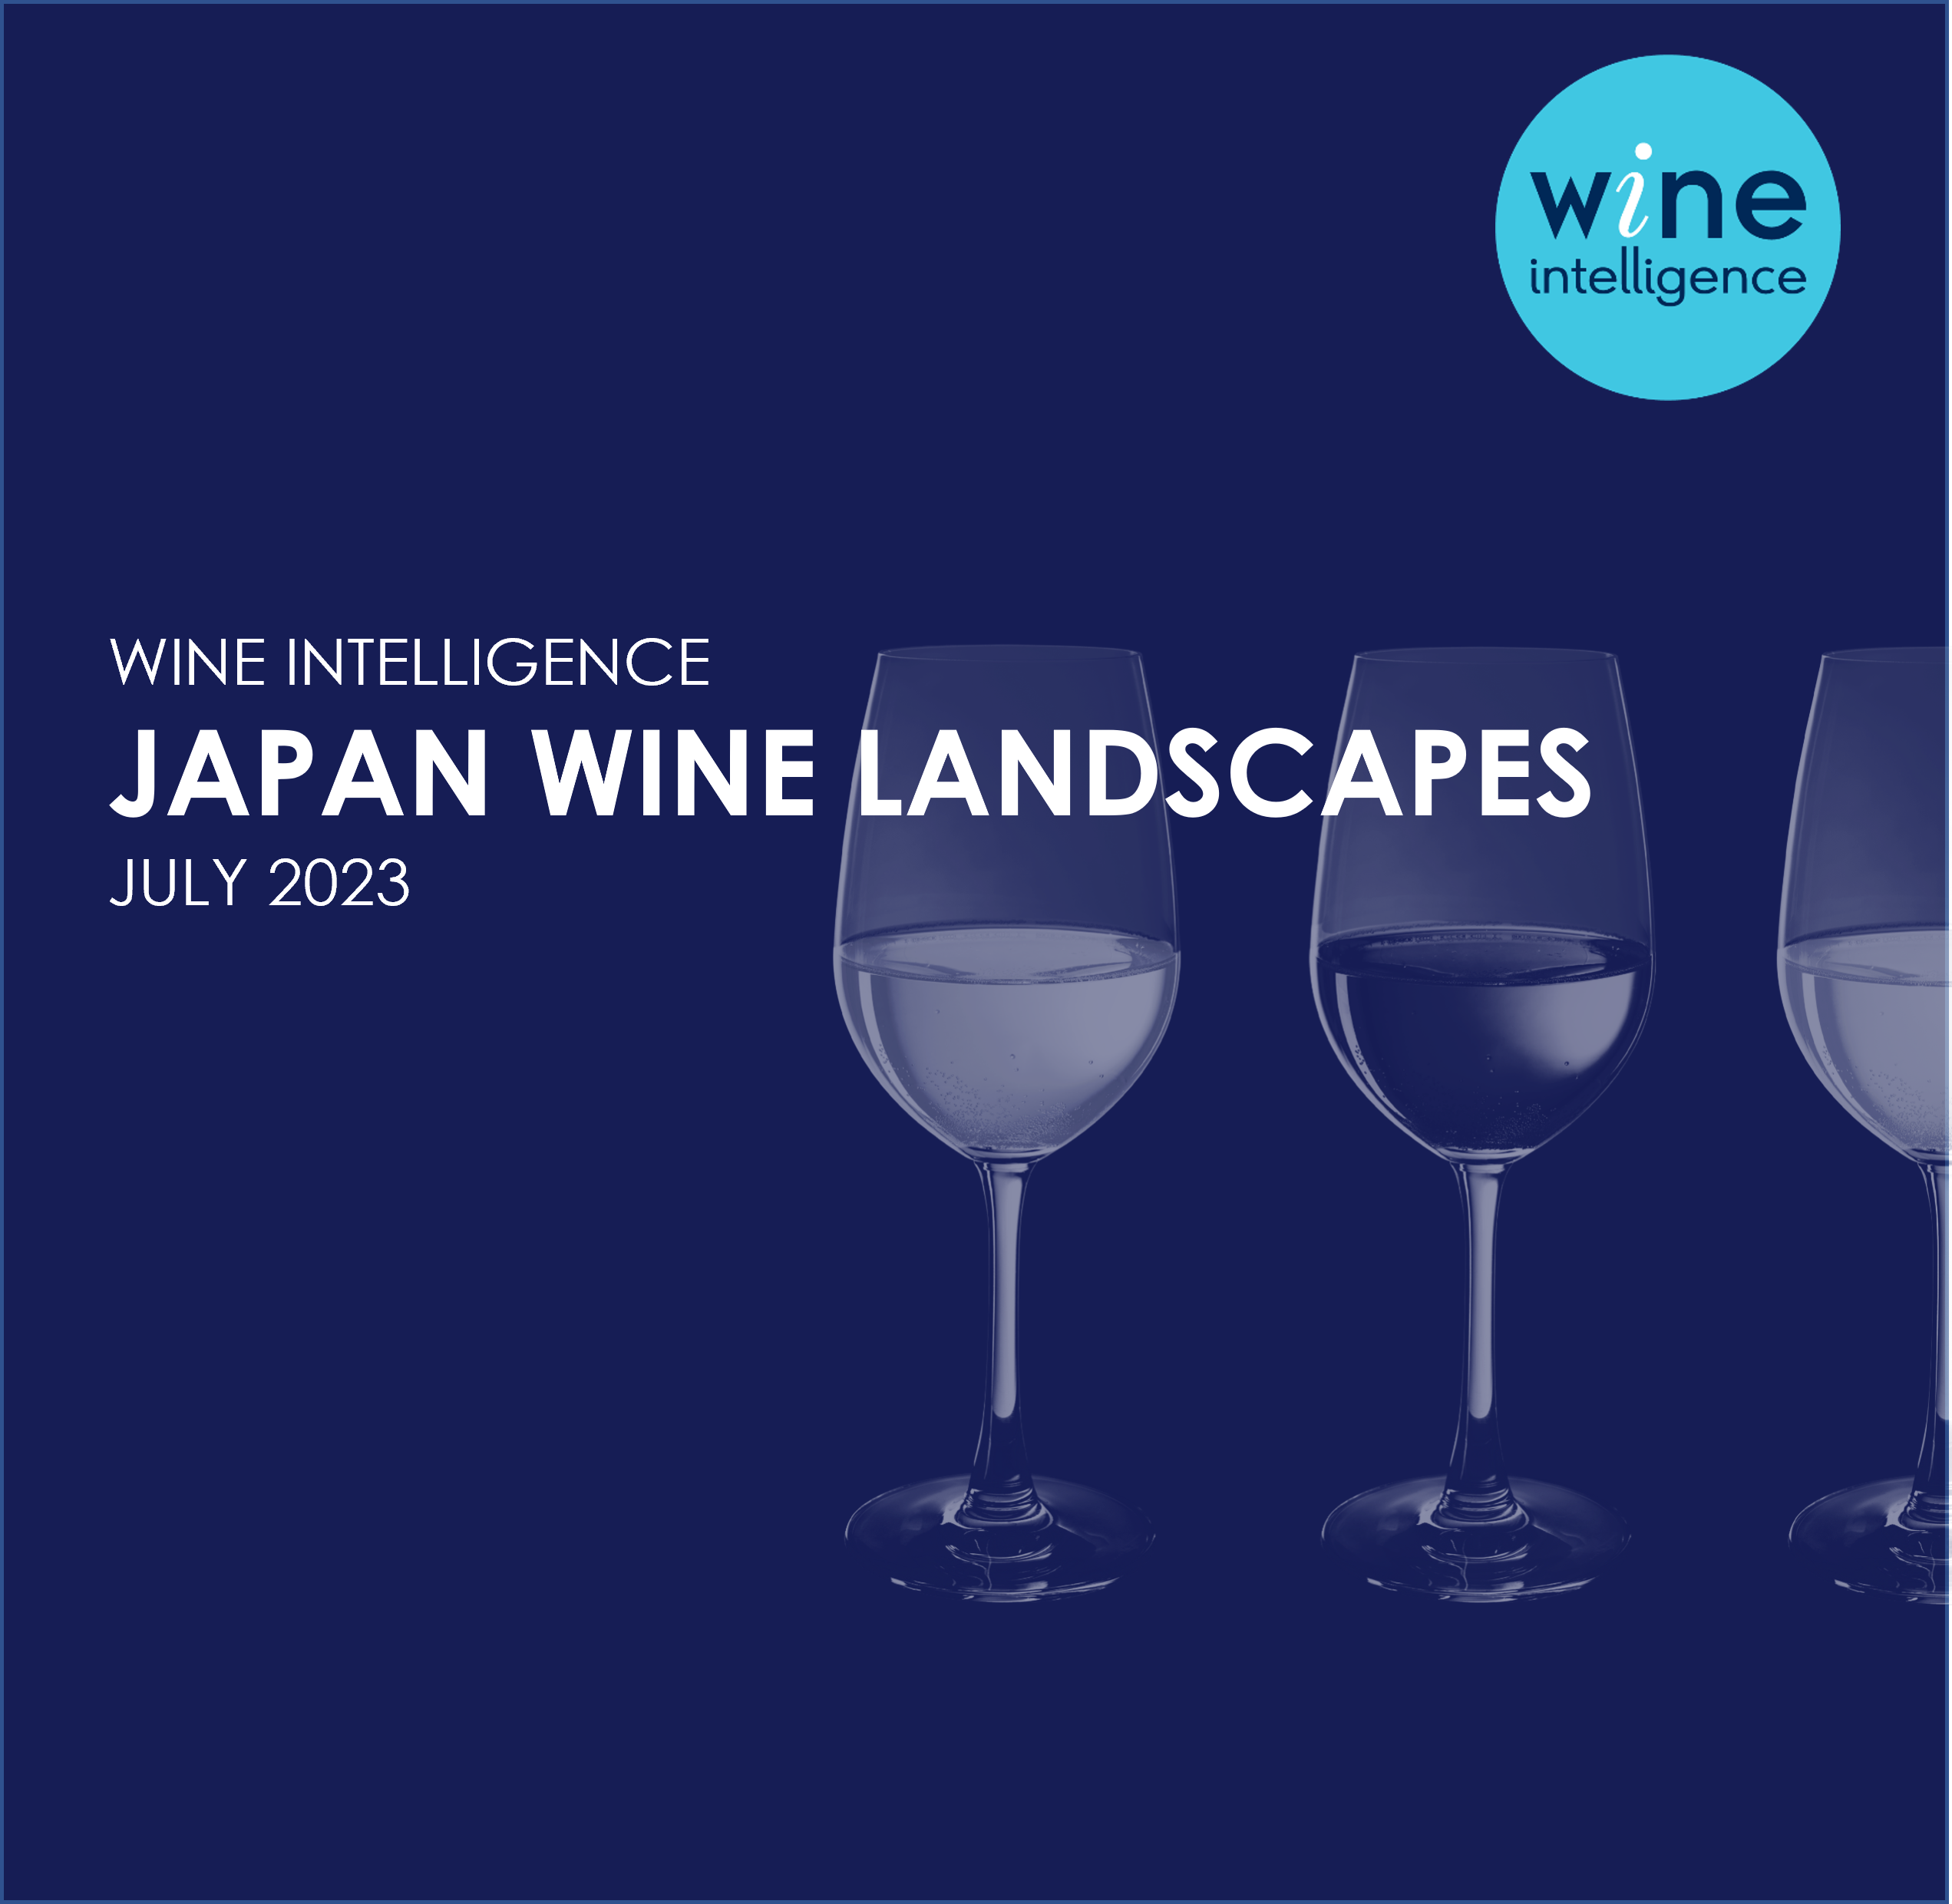 Japan Wine Landscapes 2023 - US Wine Landscapes Report 2023